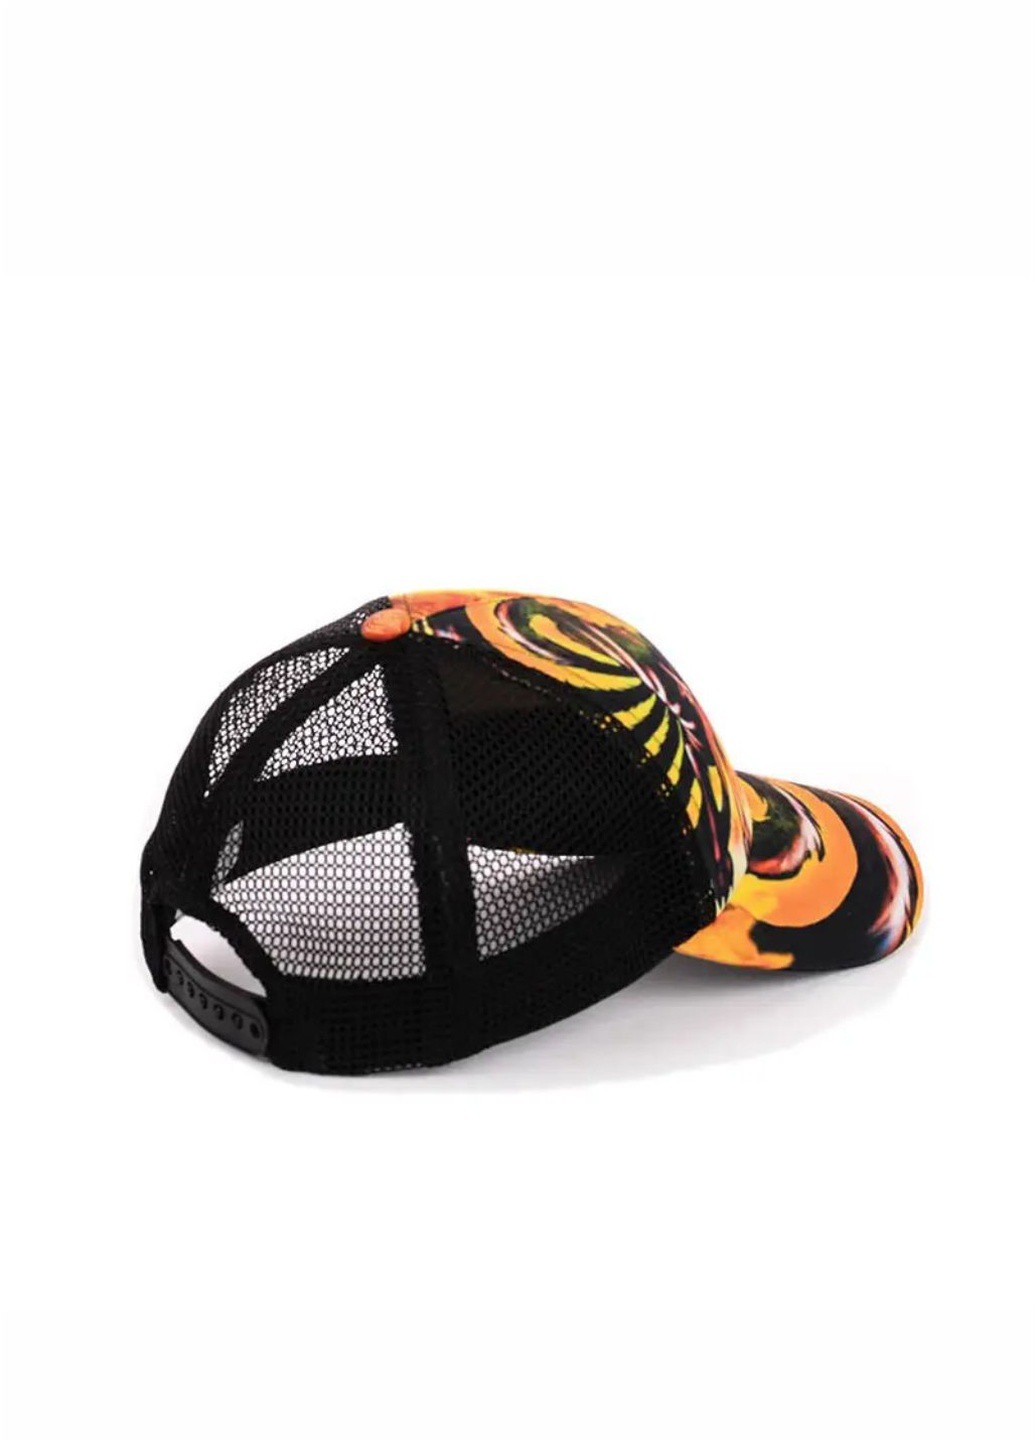 Детская кепка с сеткой (Наруто) one-size Naruto кепка с сеткой (257949447)